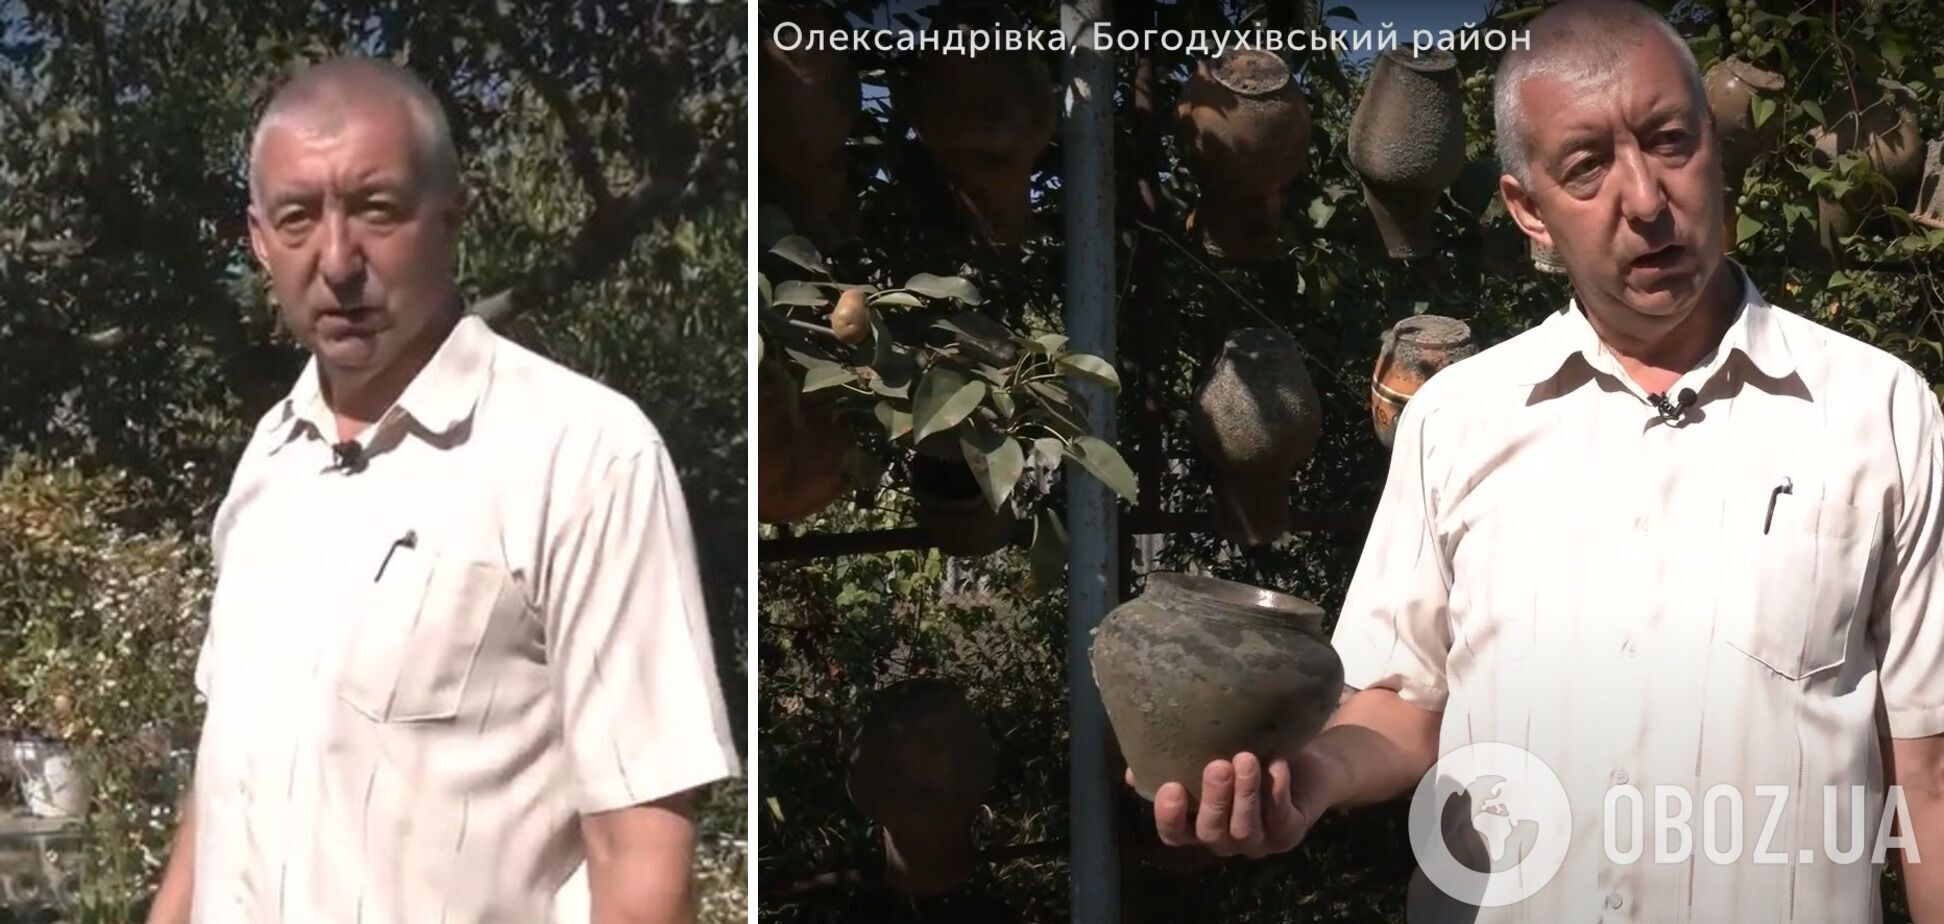 Сергей Глущенко имел коллекцию глиняных горшков